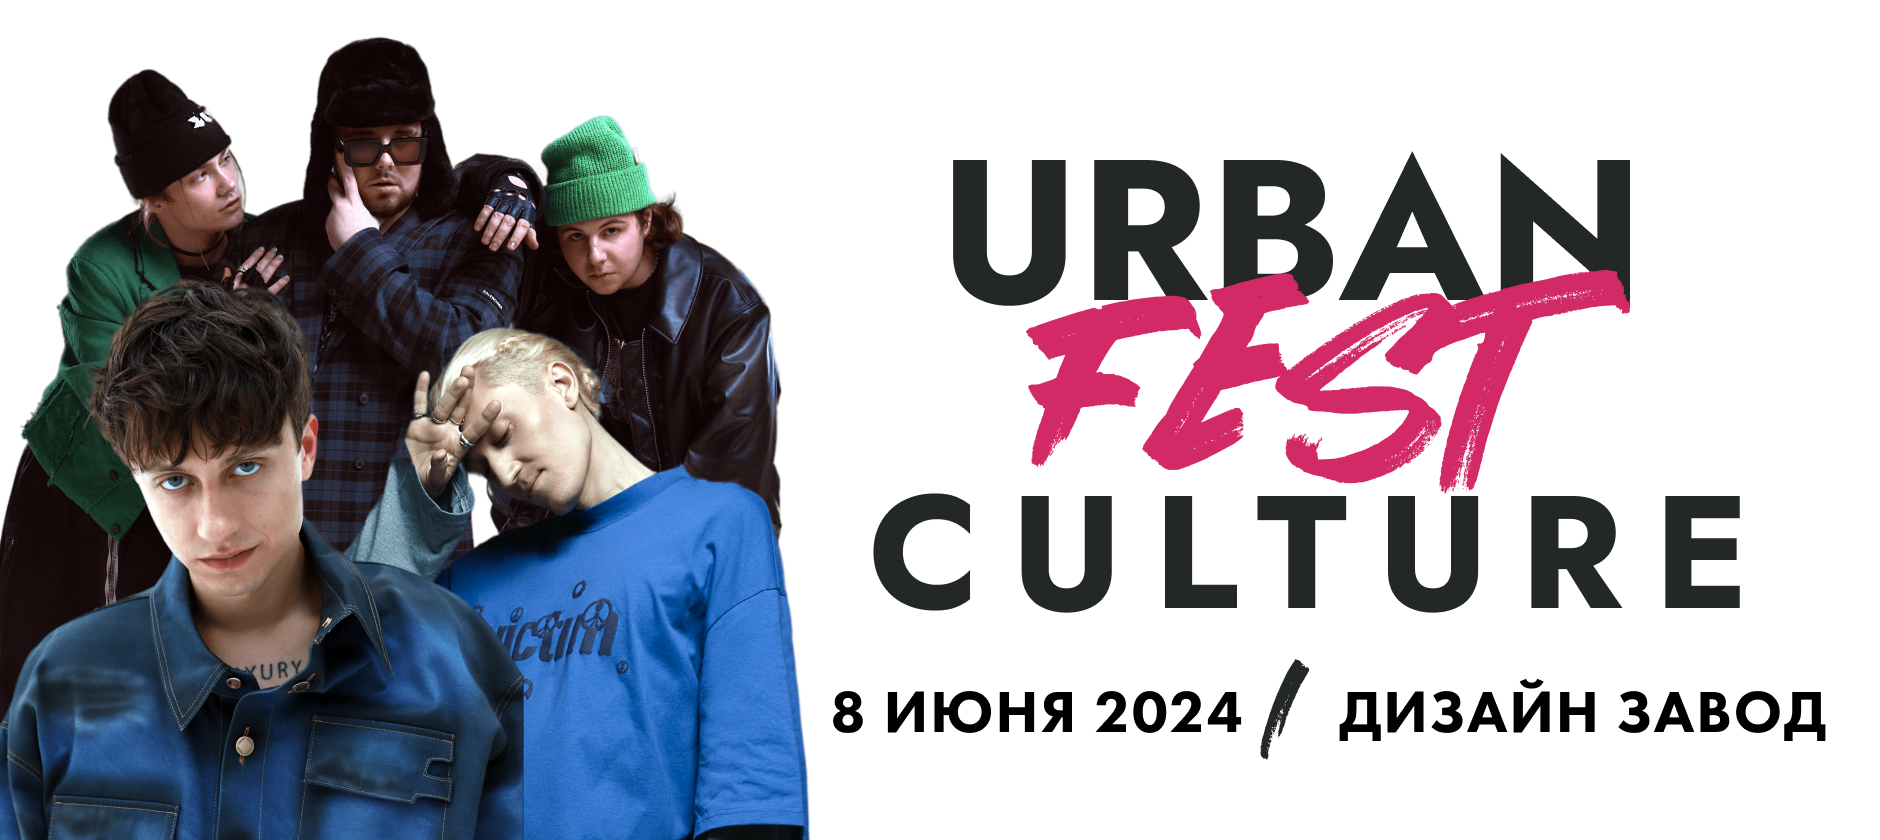 (RU) Urban Culture Fest